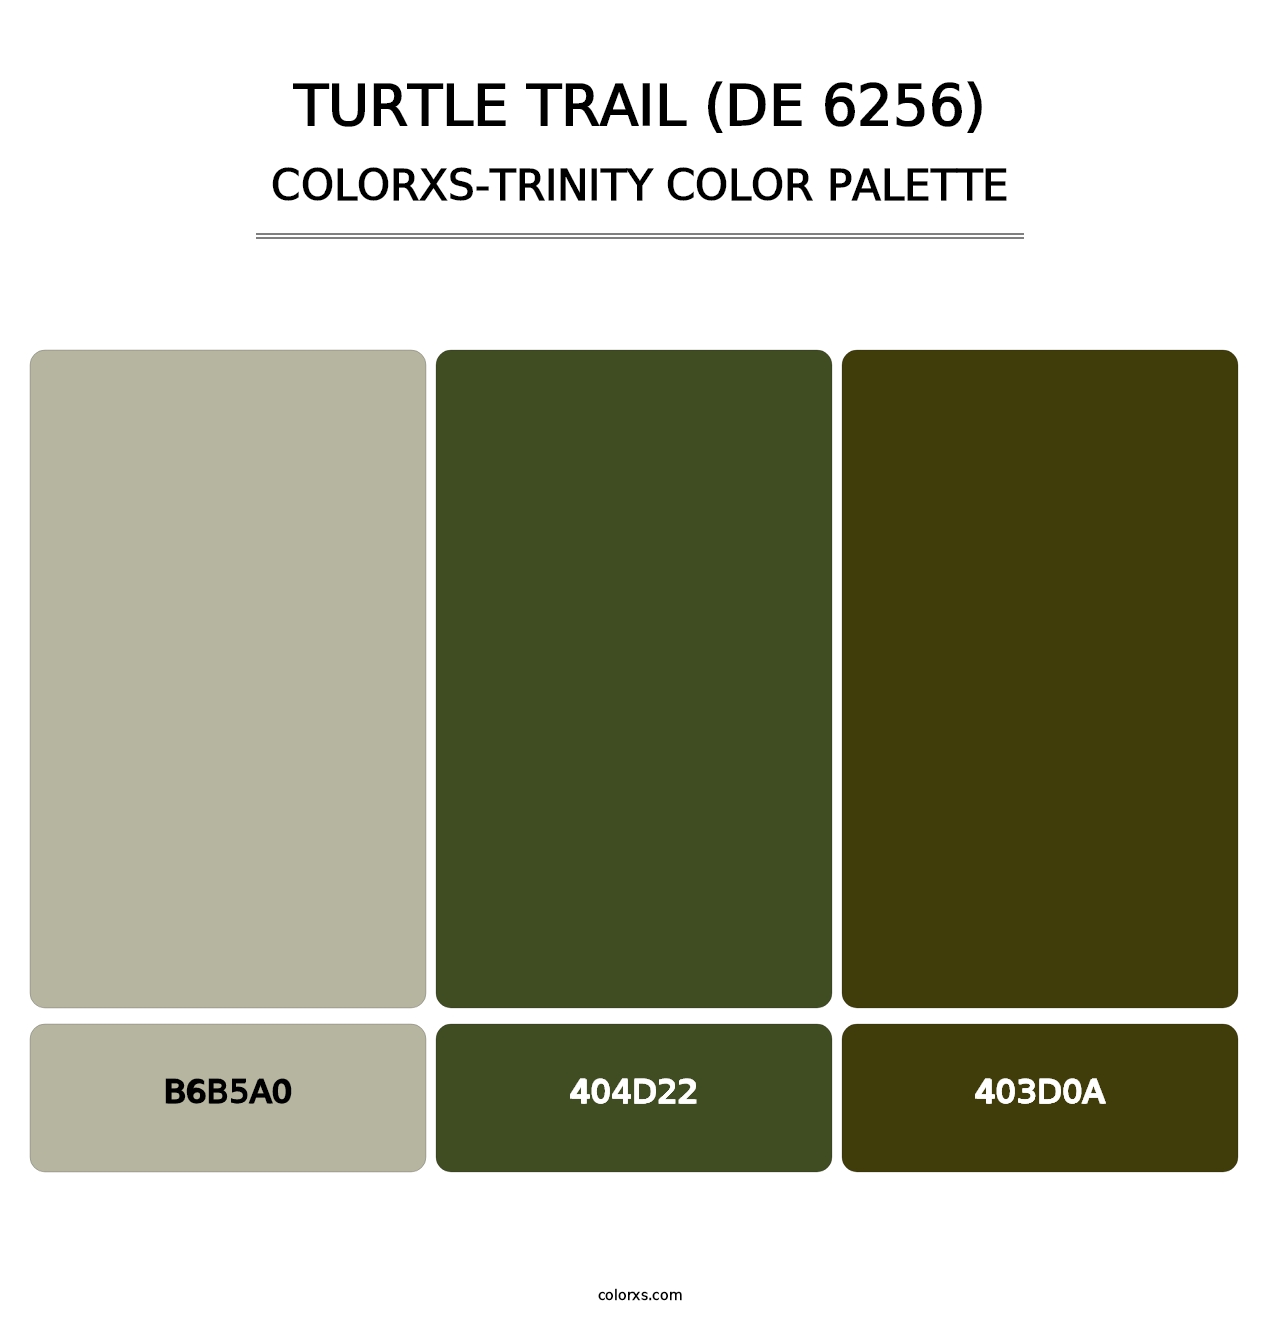 Turtle Trail (DE 6256) - Colorxs Trinity Palette